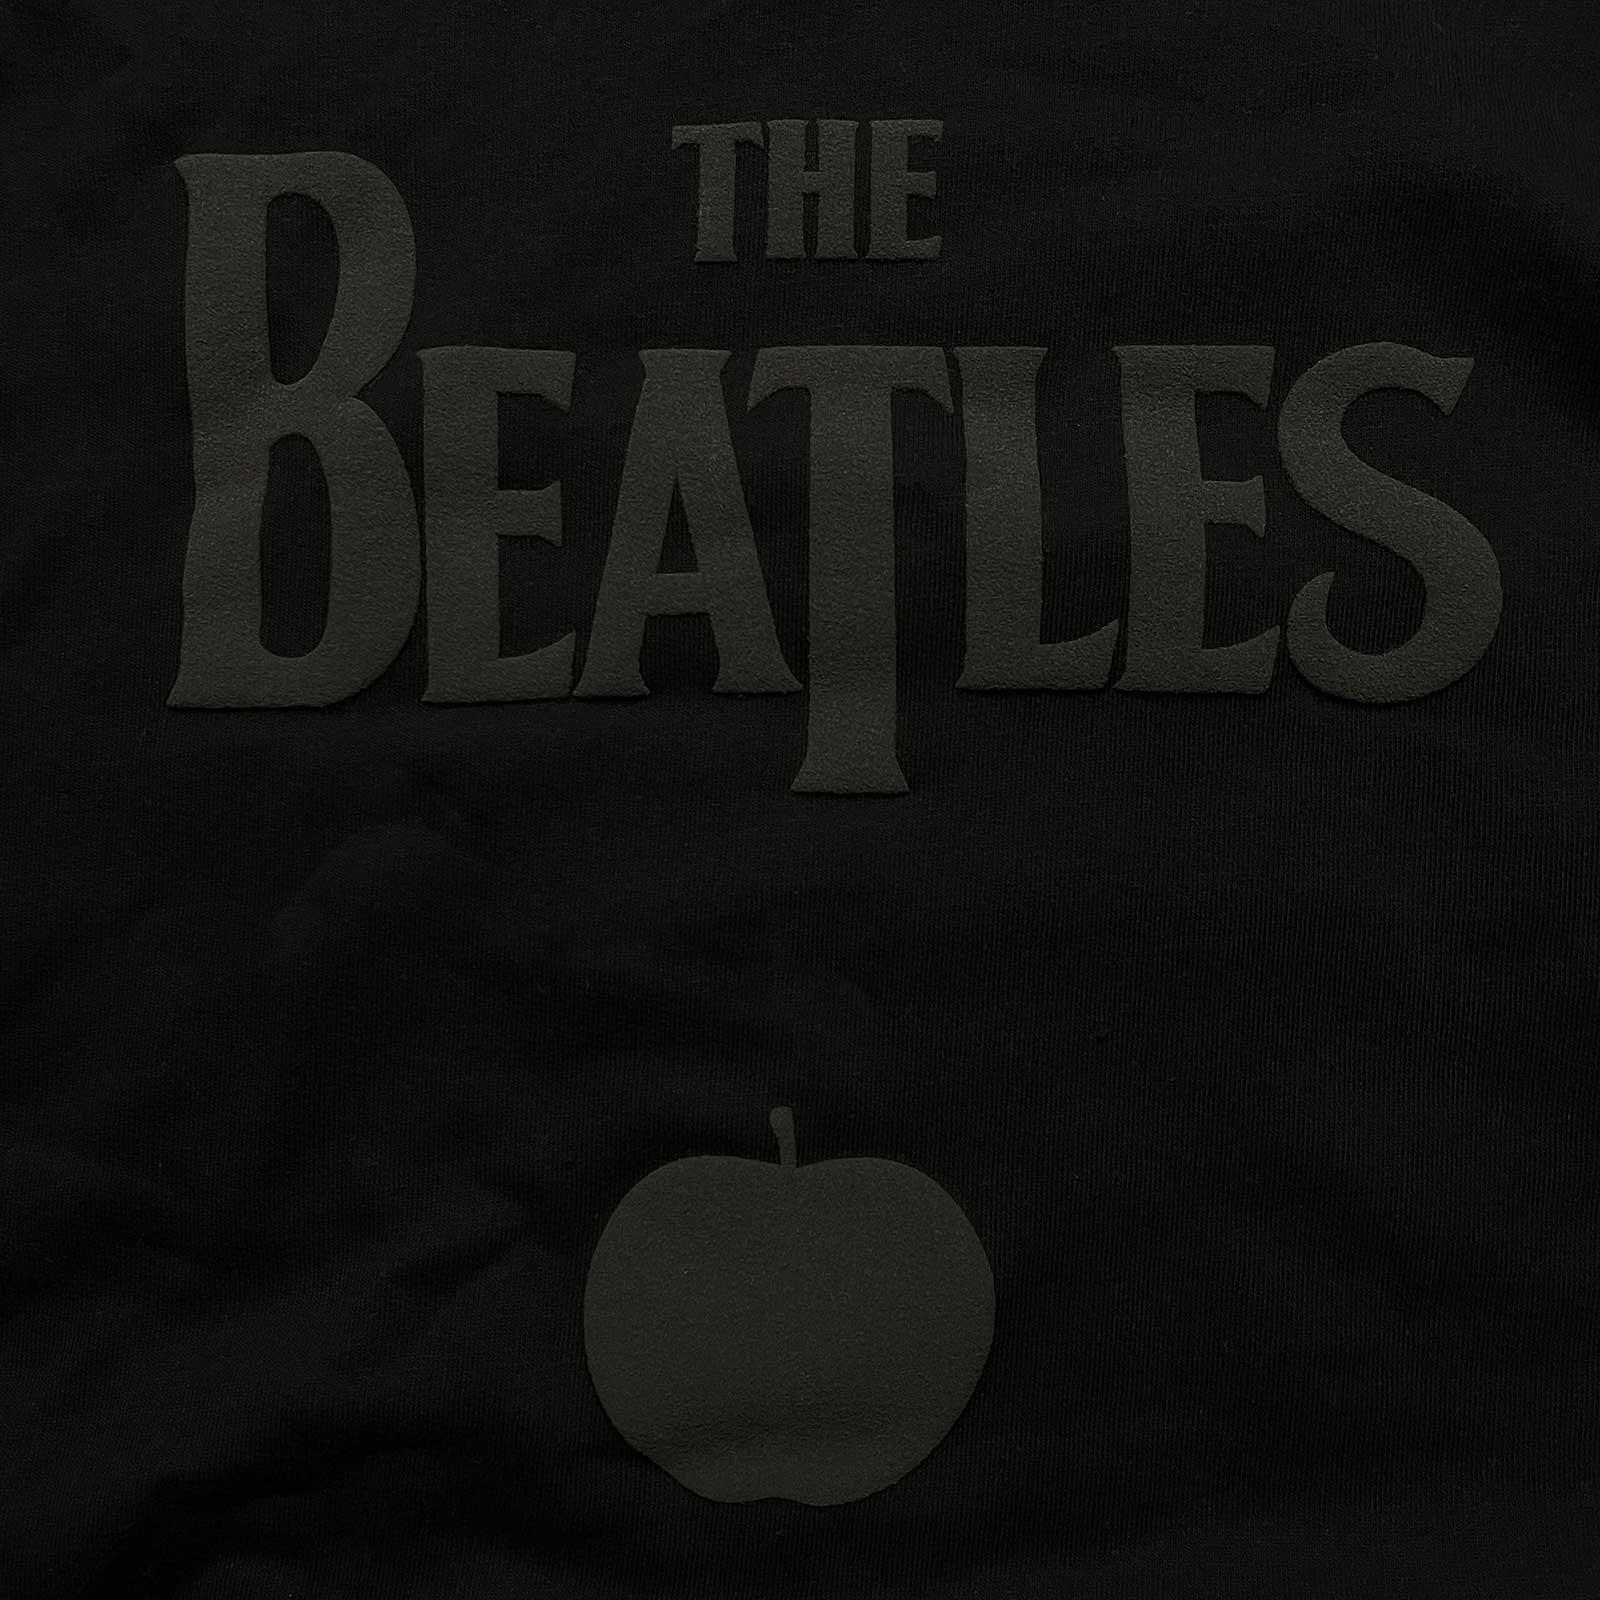 The Beatles  Hoodie zum Überziehen 